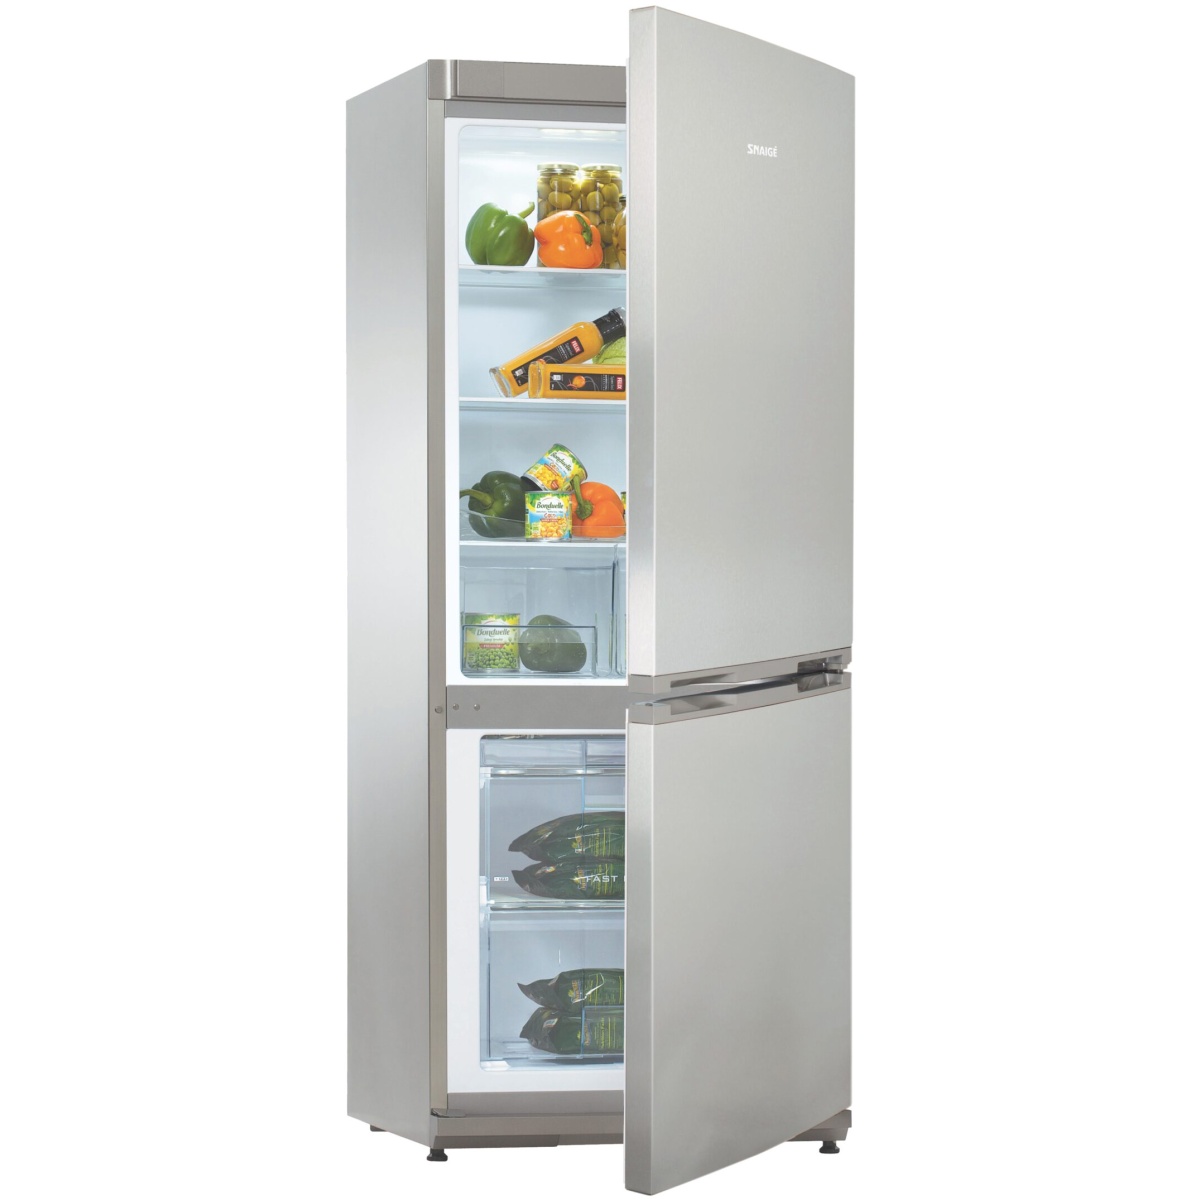 Холодильник Snaige RF27SM-P0CB2E0 (Ice Logic / Объем - 244 л / Высота - 150см / А++ / Серебристый)